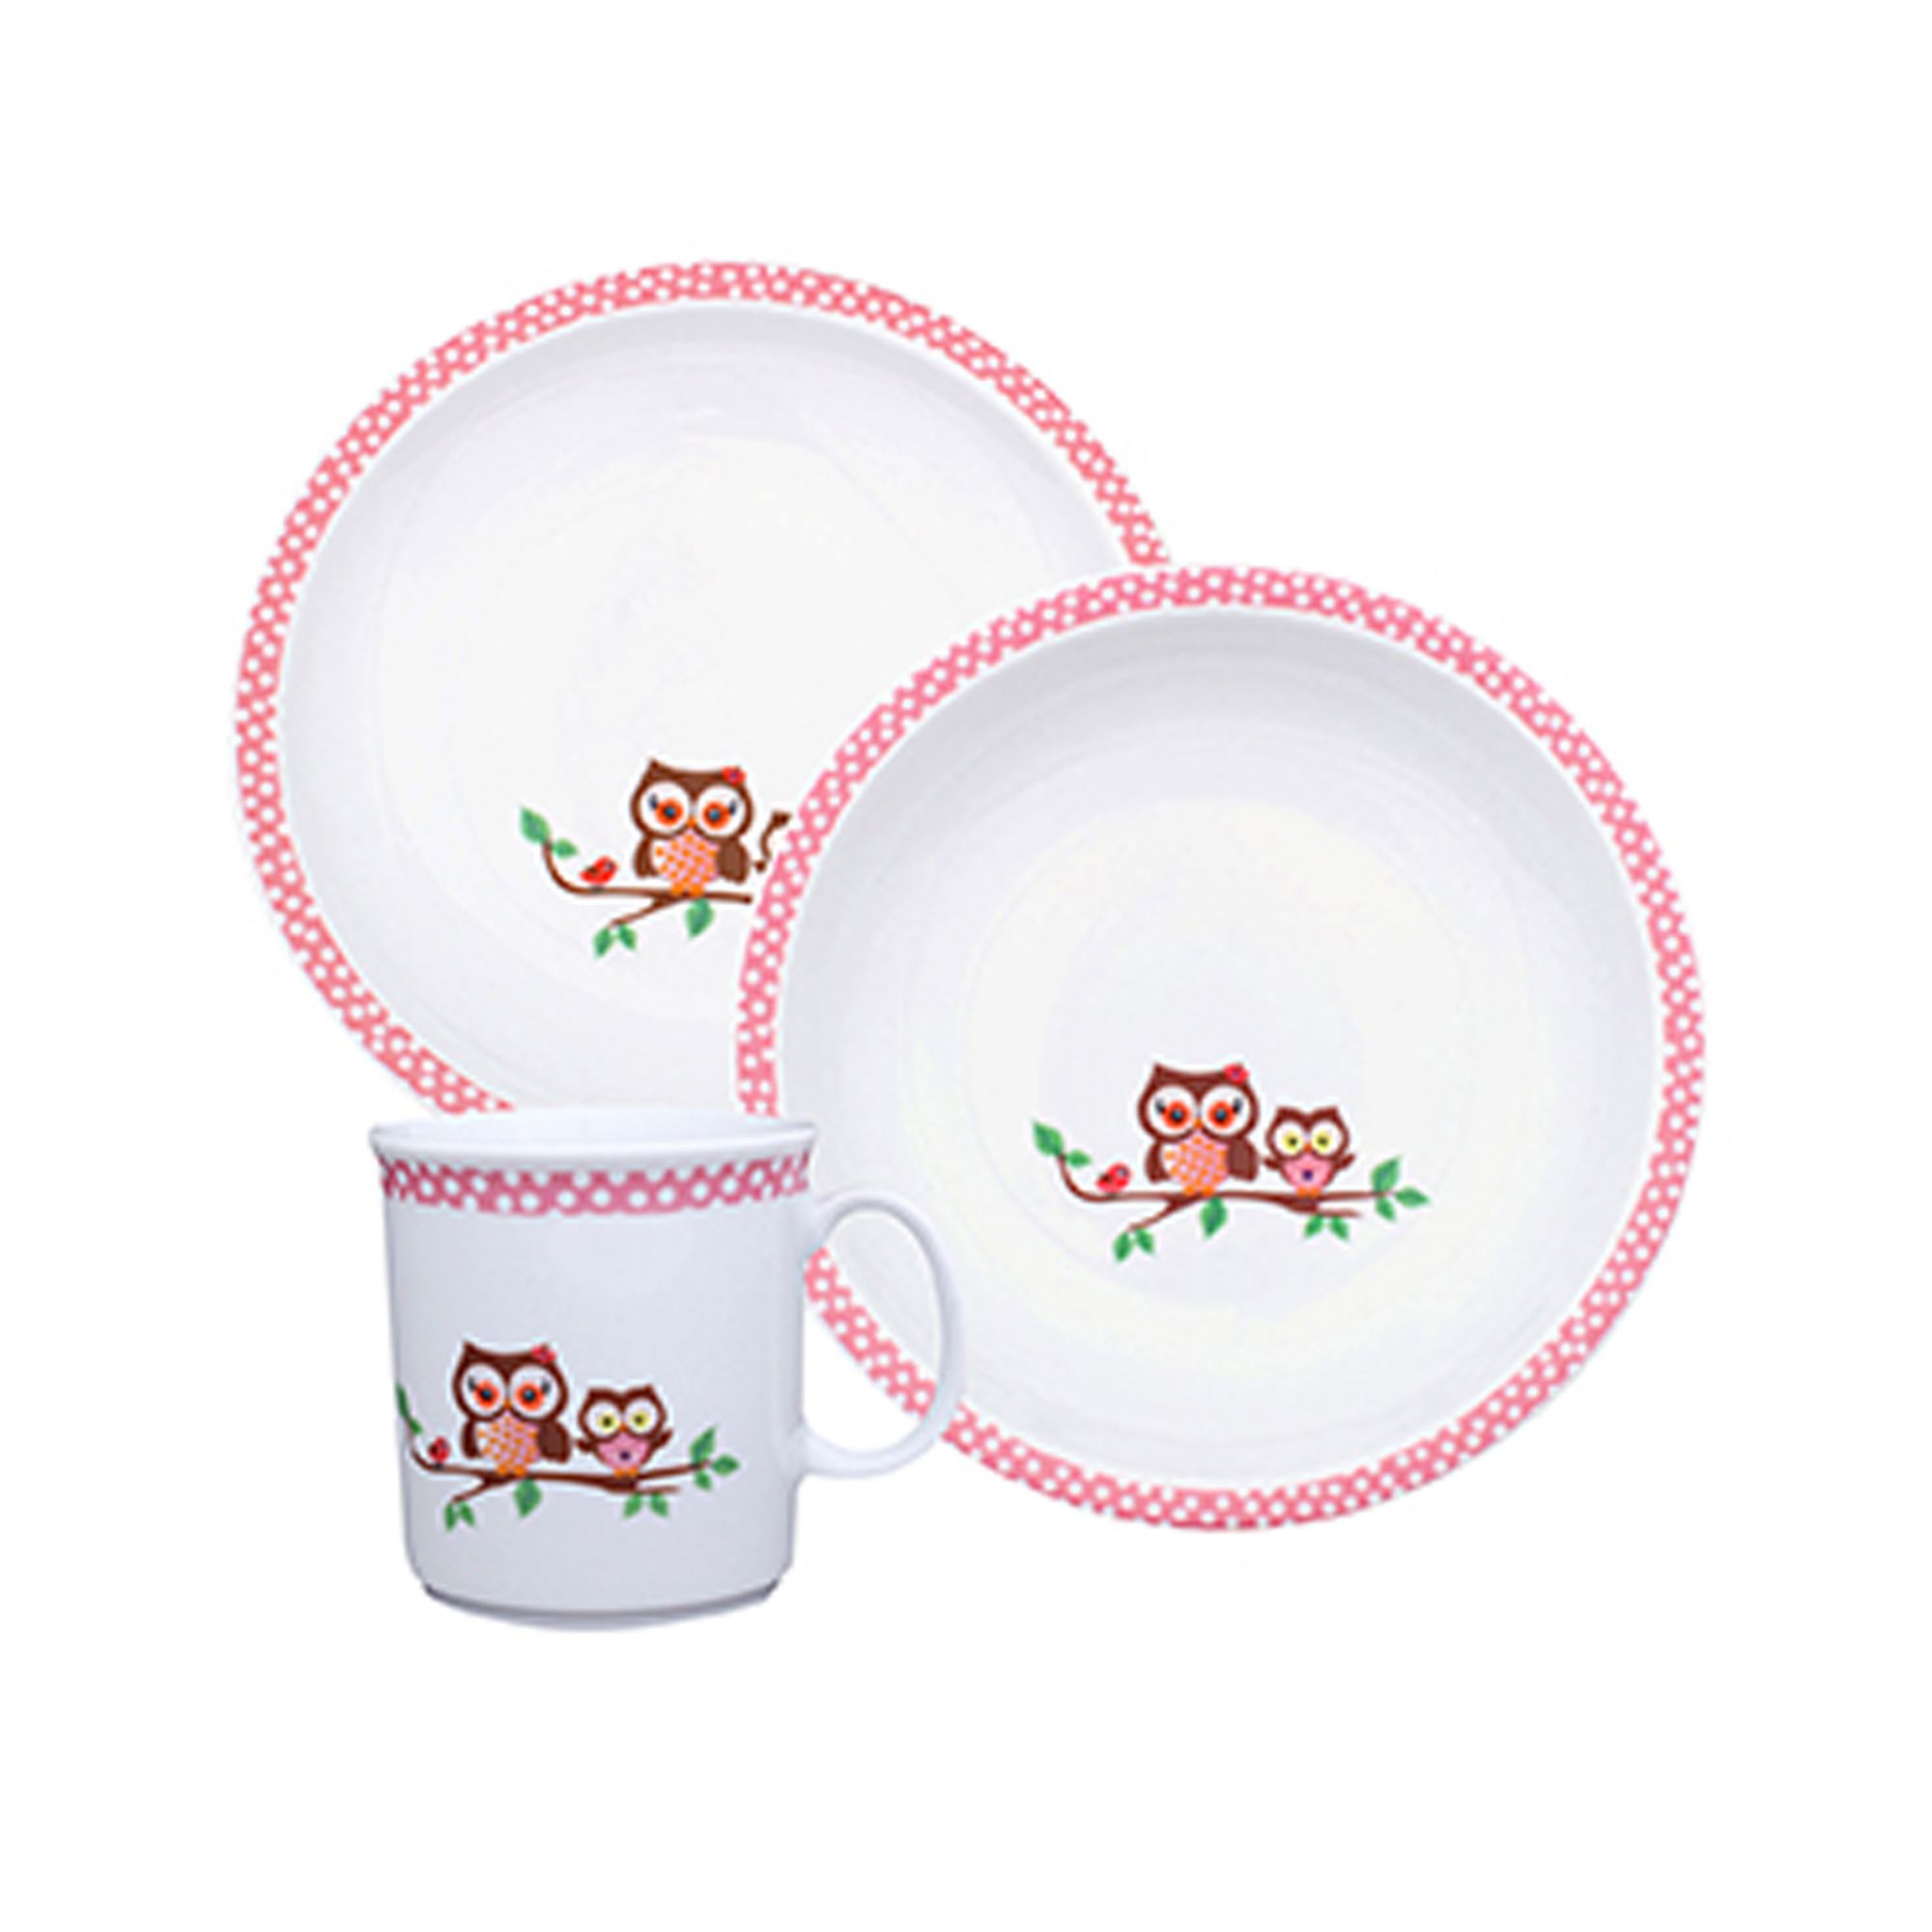 Eschenbach Children's tableware | Erna & Emilia | Set 3pcs.